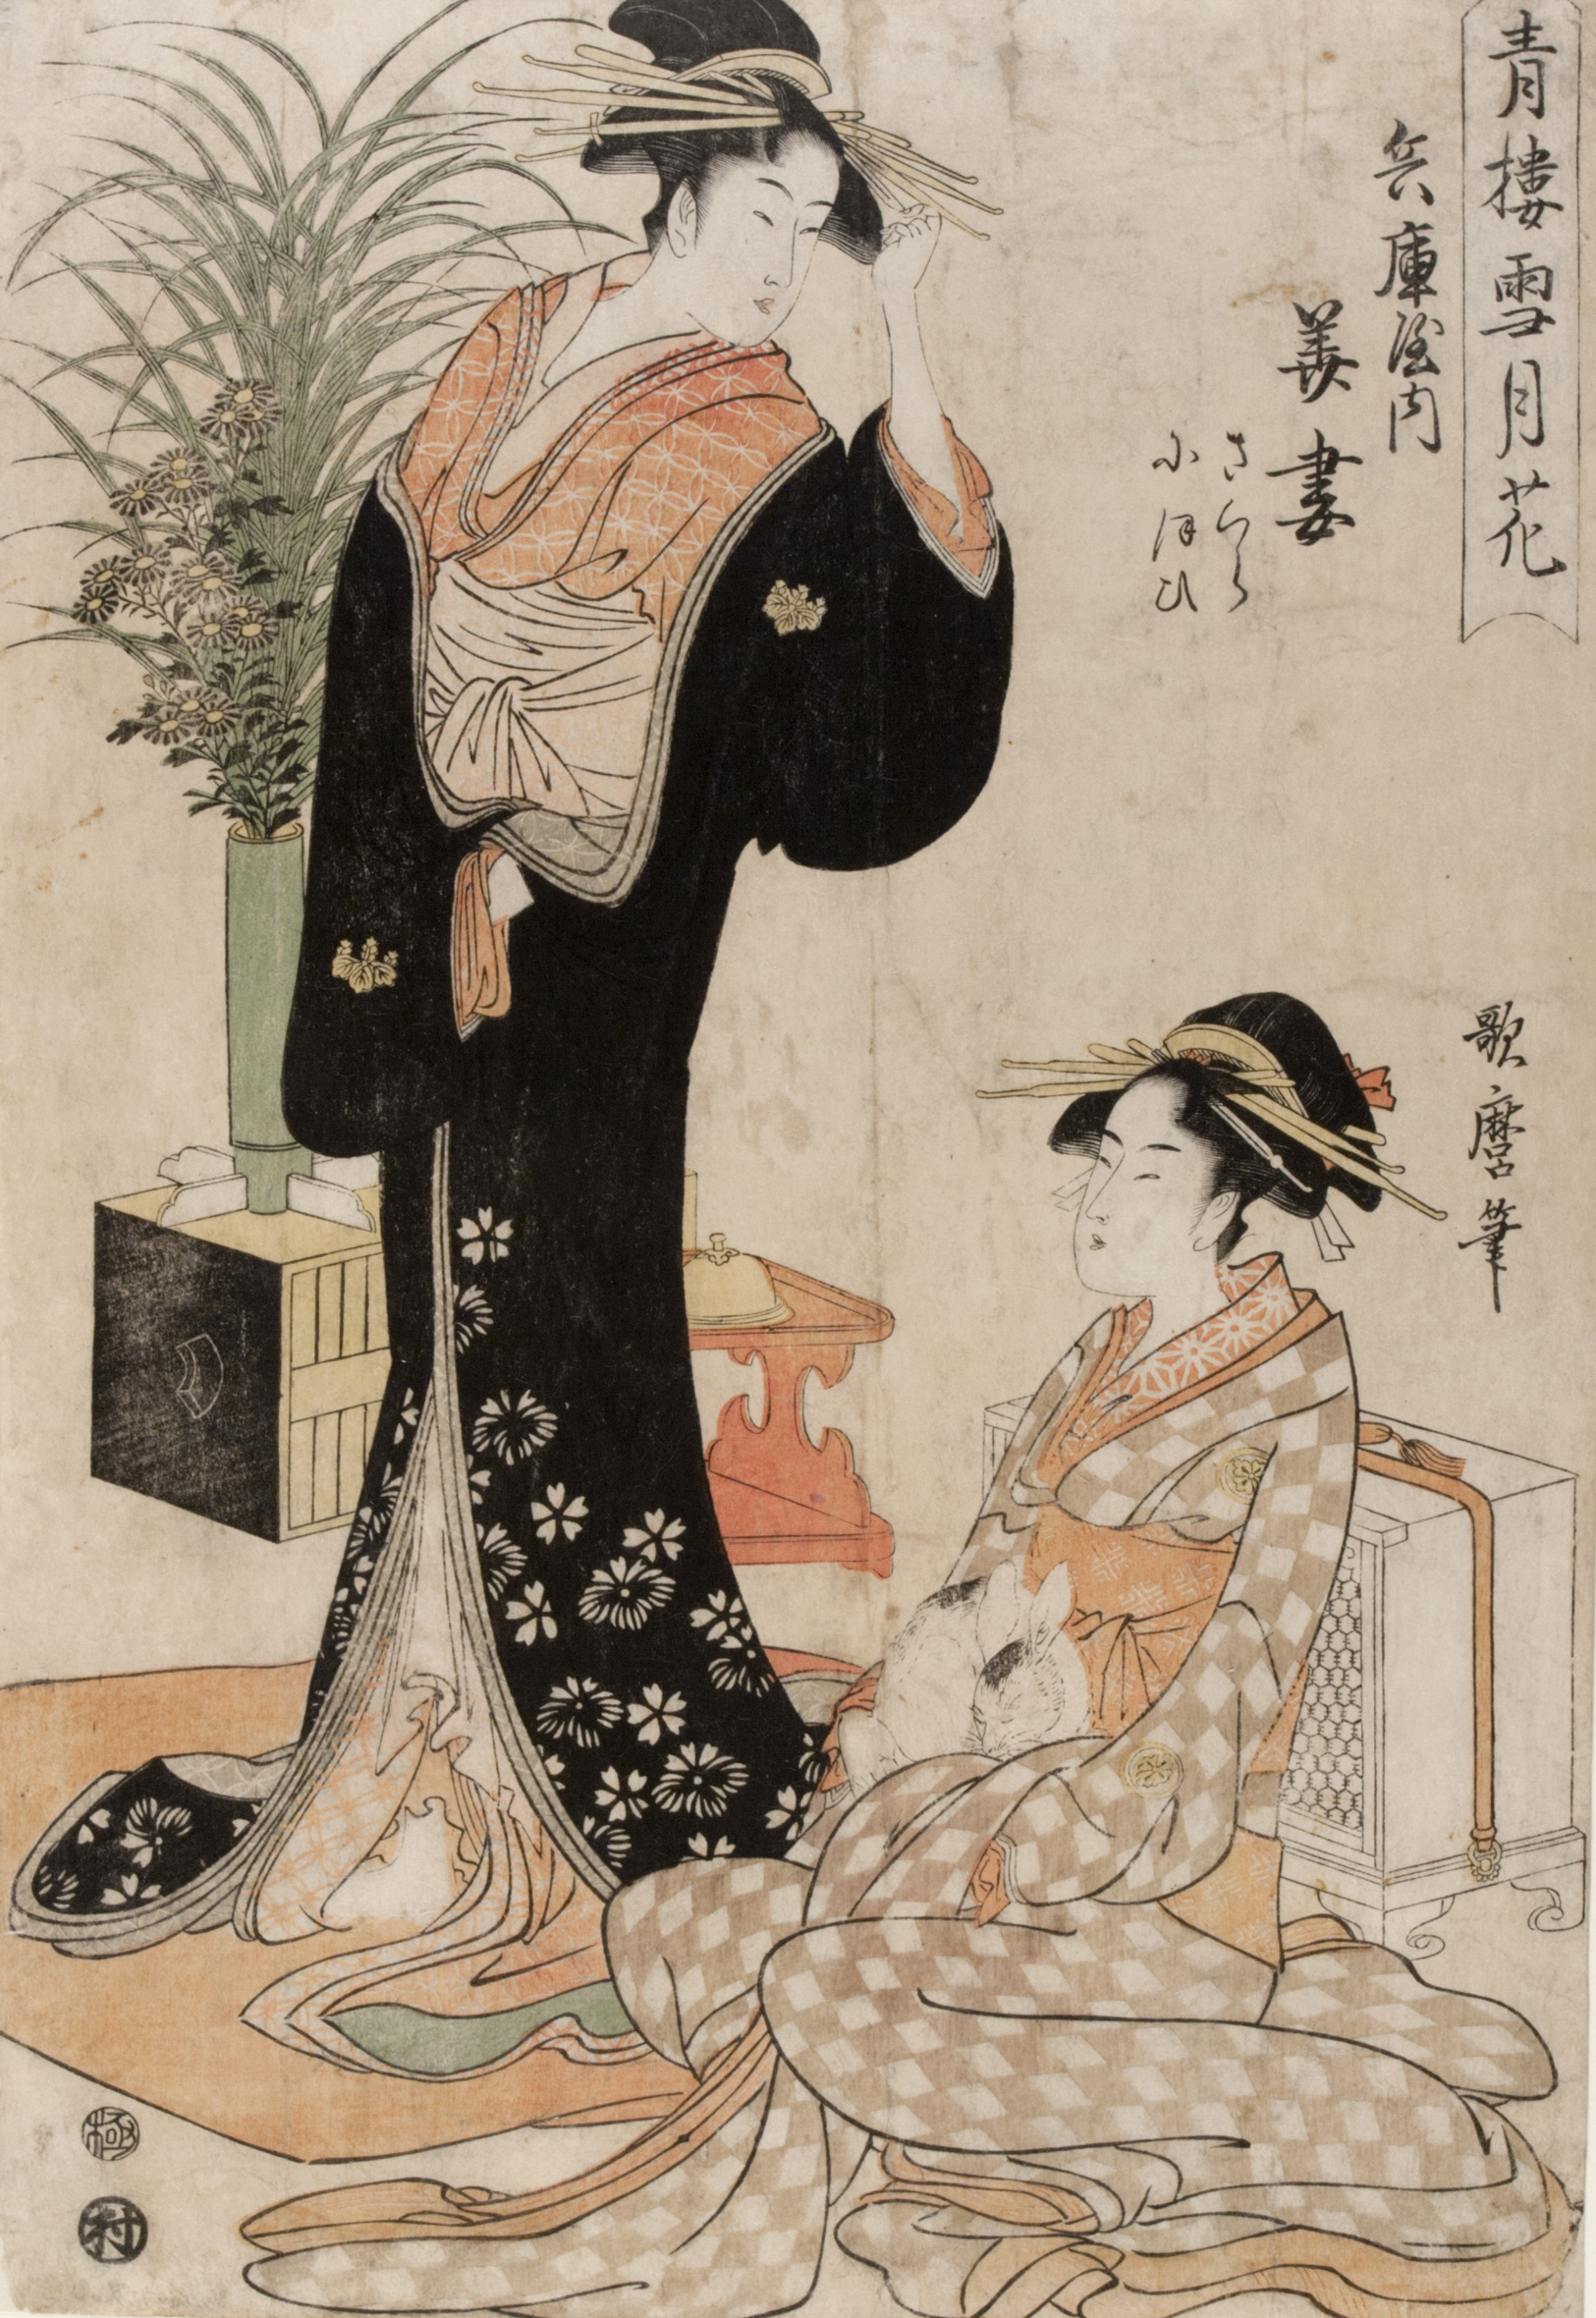 Kurtyzana Hanazuma z domu uciech Hyōgoya i towarzyszka z zajączkiem by Kitagawa Utamaro - 1793 